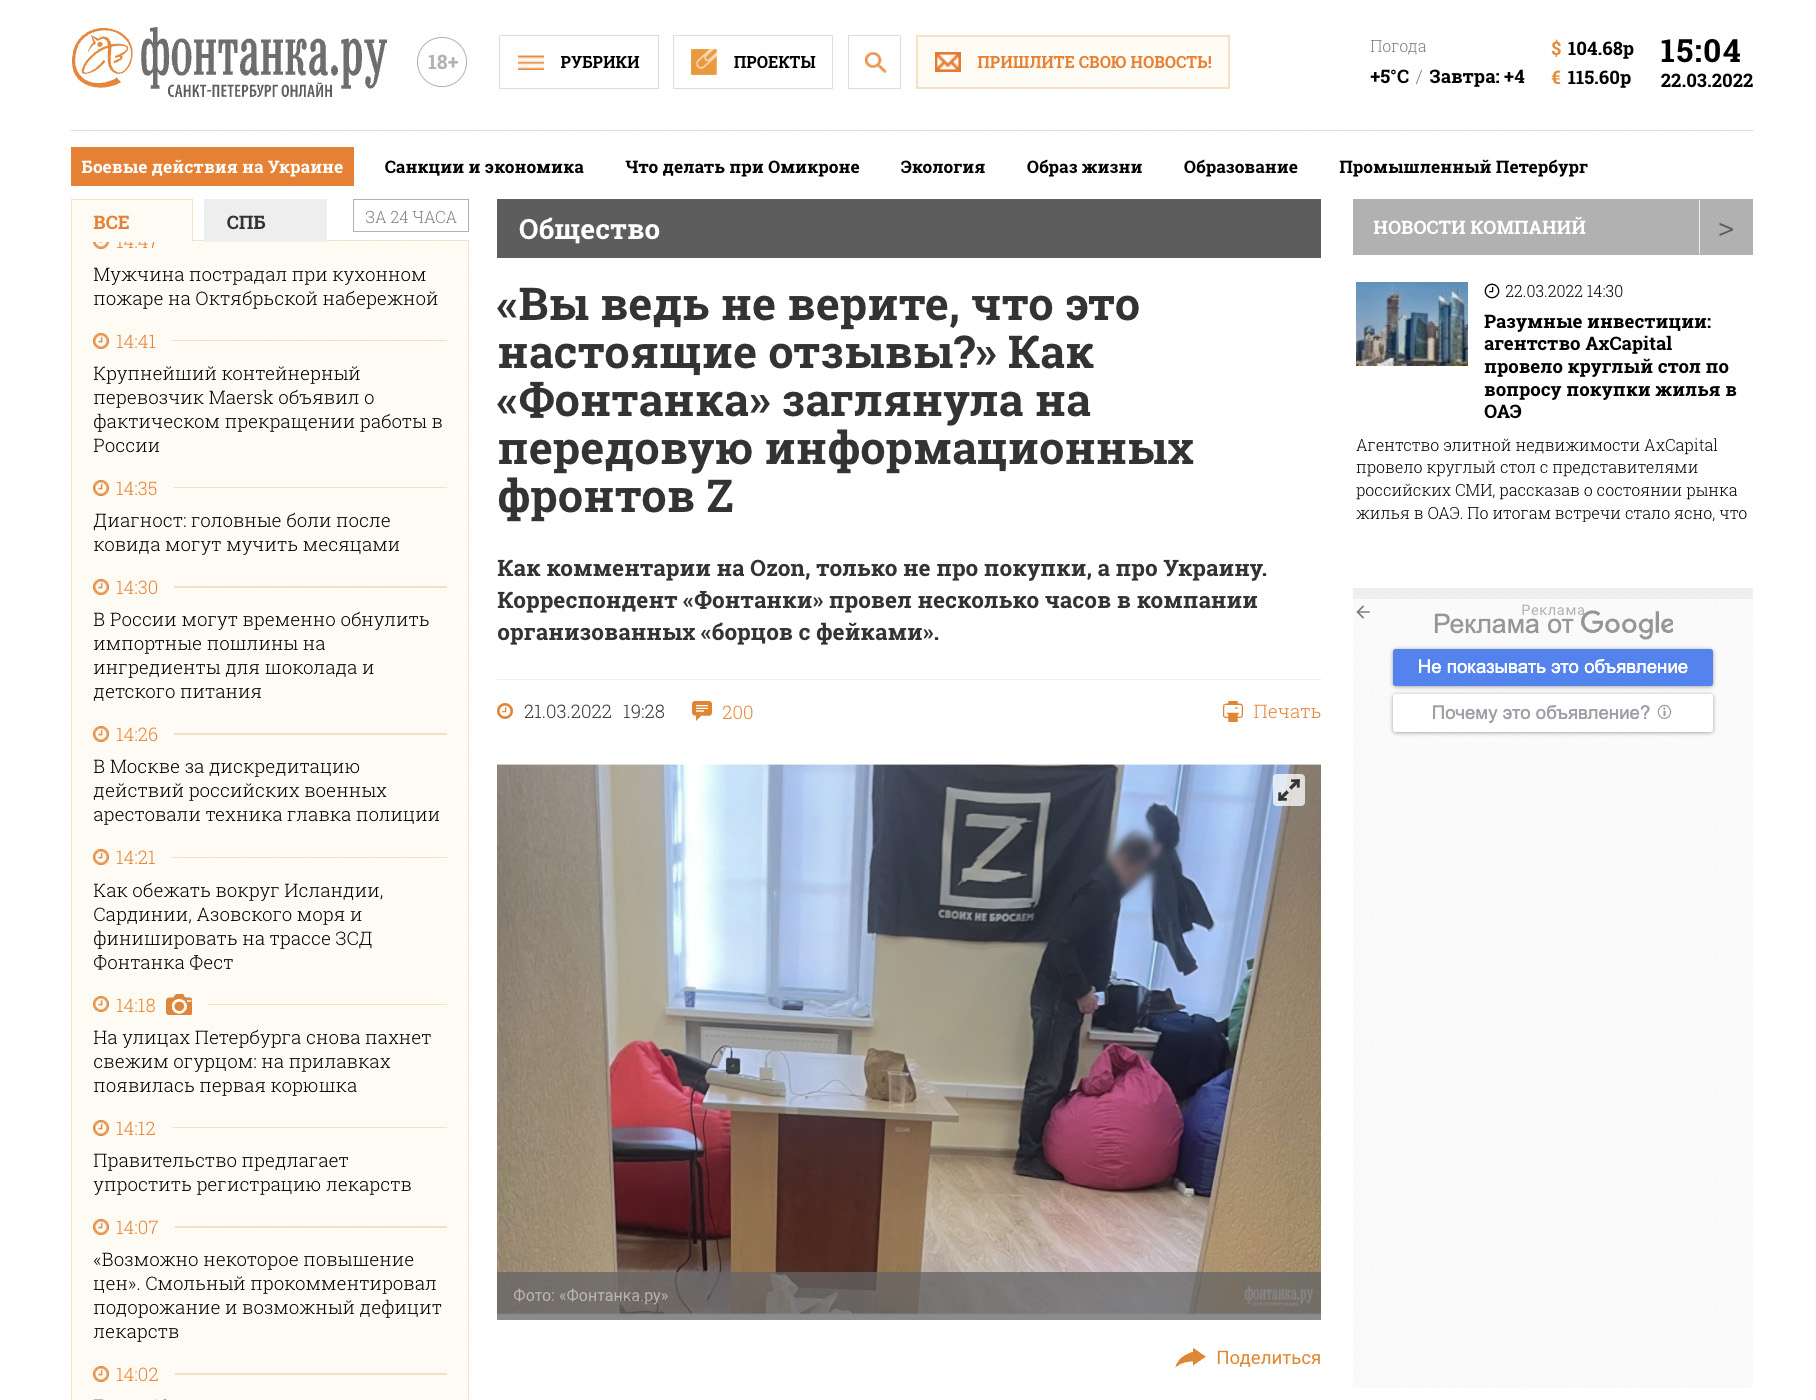 Скриншот сайта петербургcкого издания "Фонтанка.ру" 